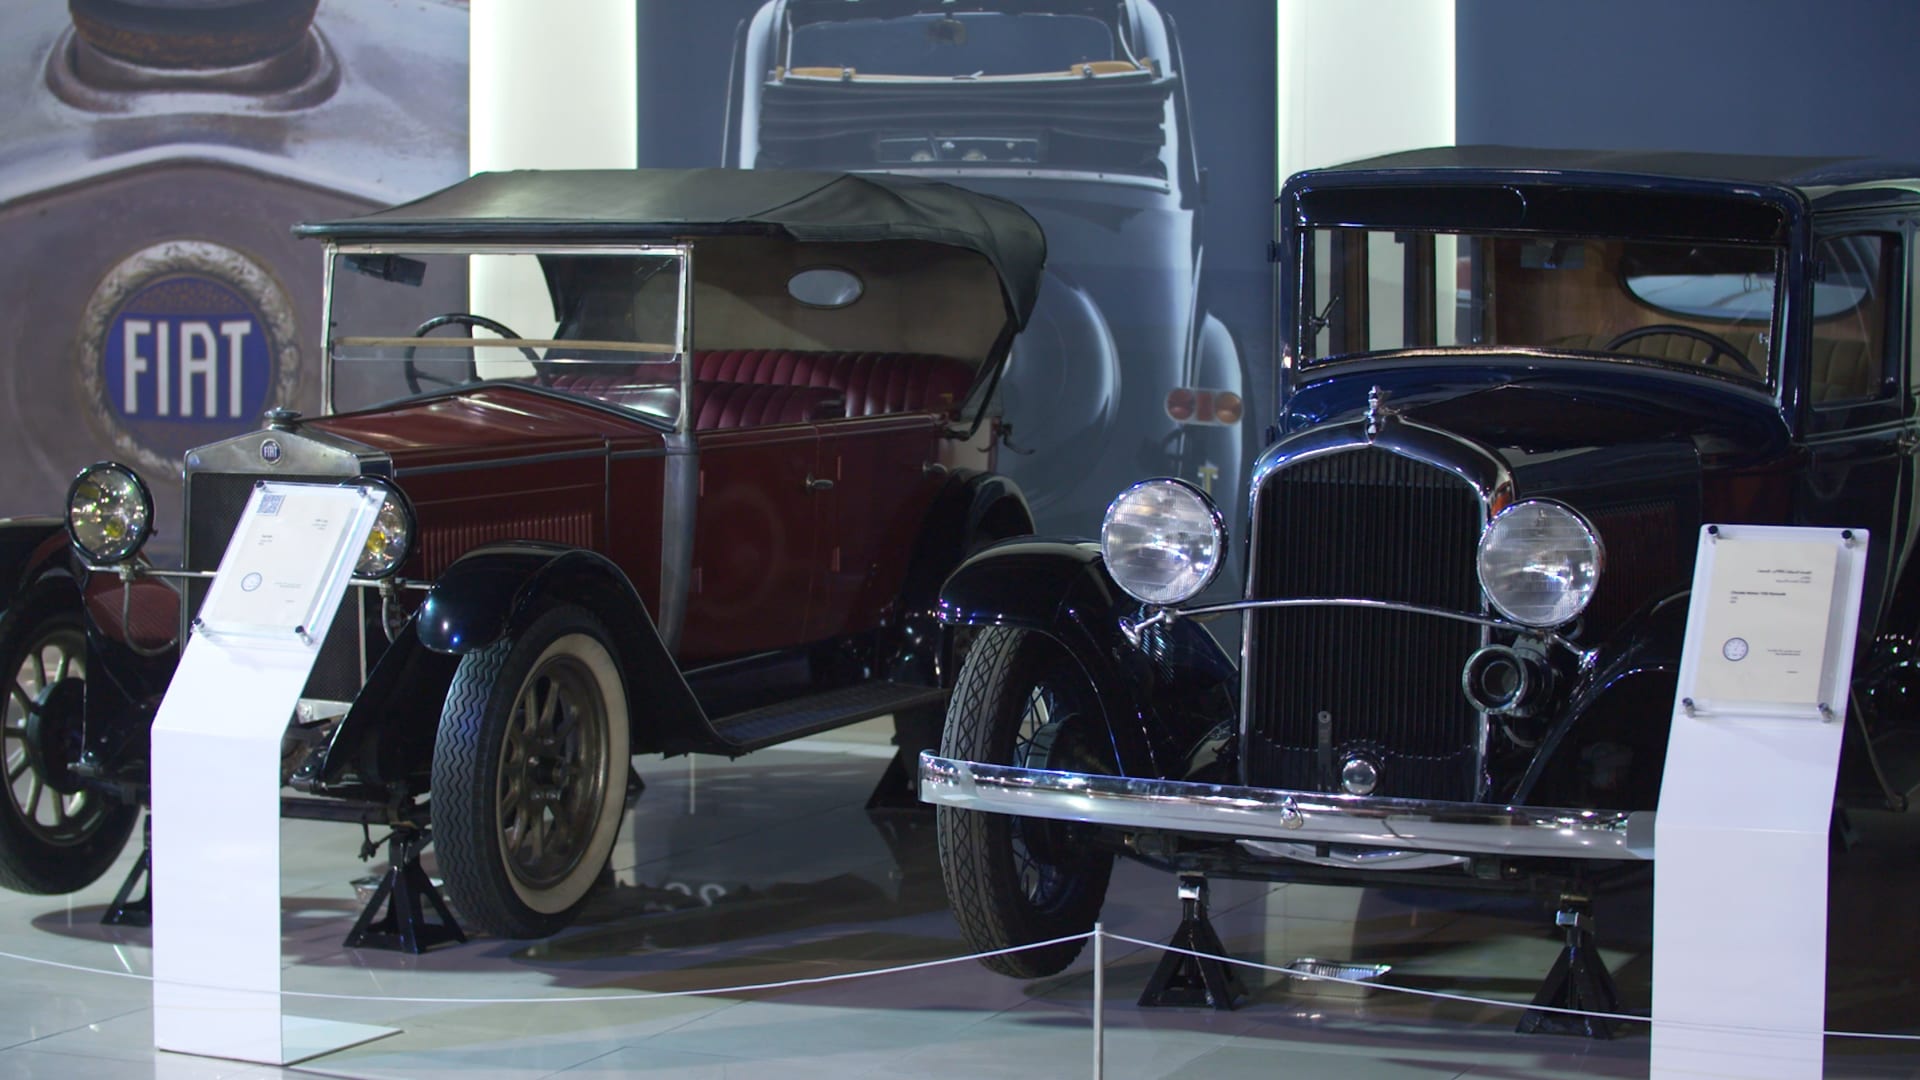 إليك ما يمكنك رؤيته في هذا المتحف للسيارات القديمة بالإمارات